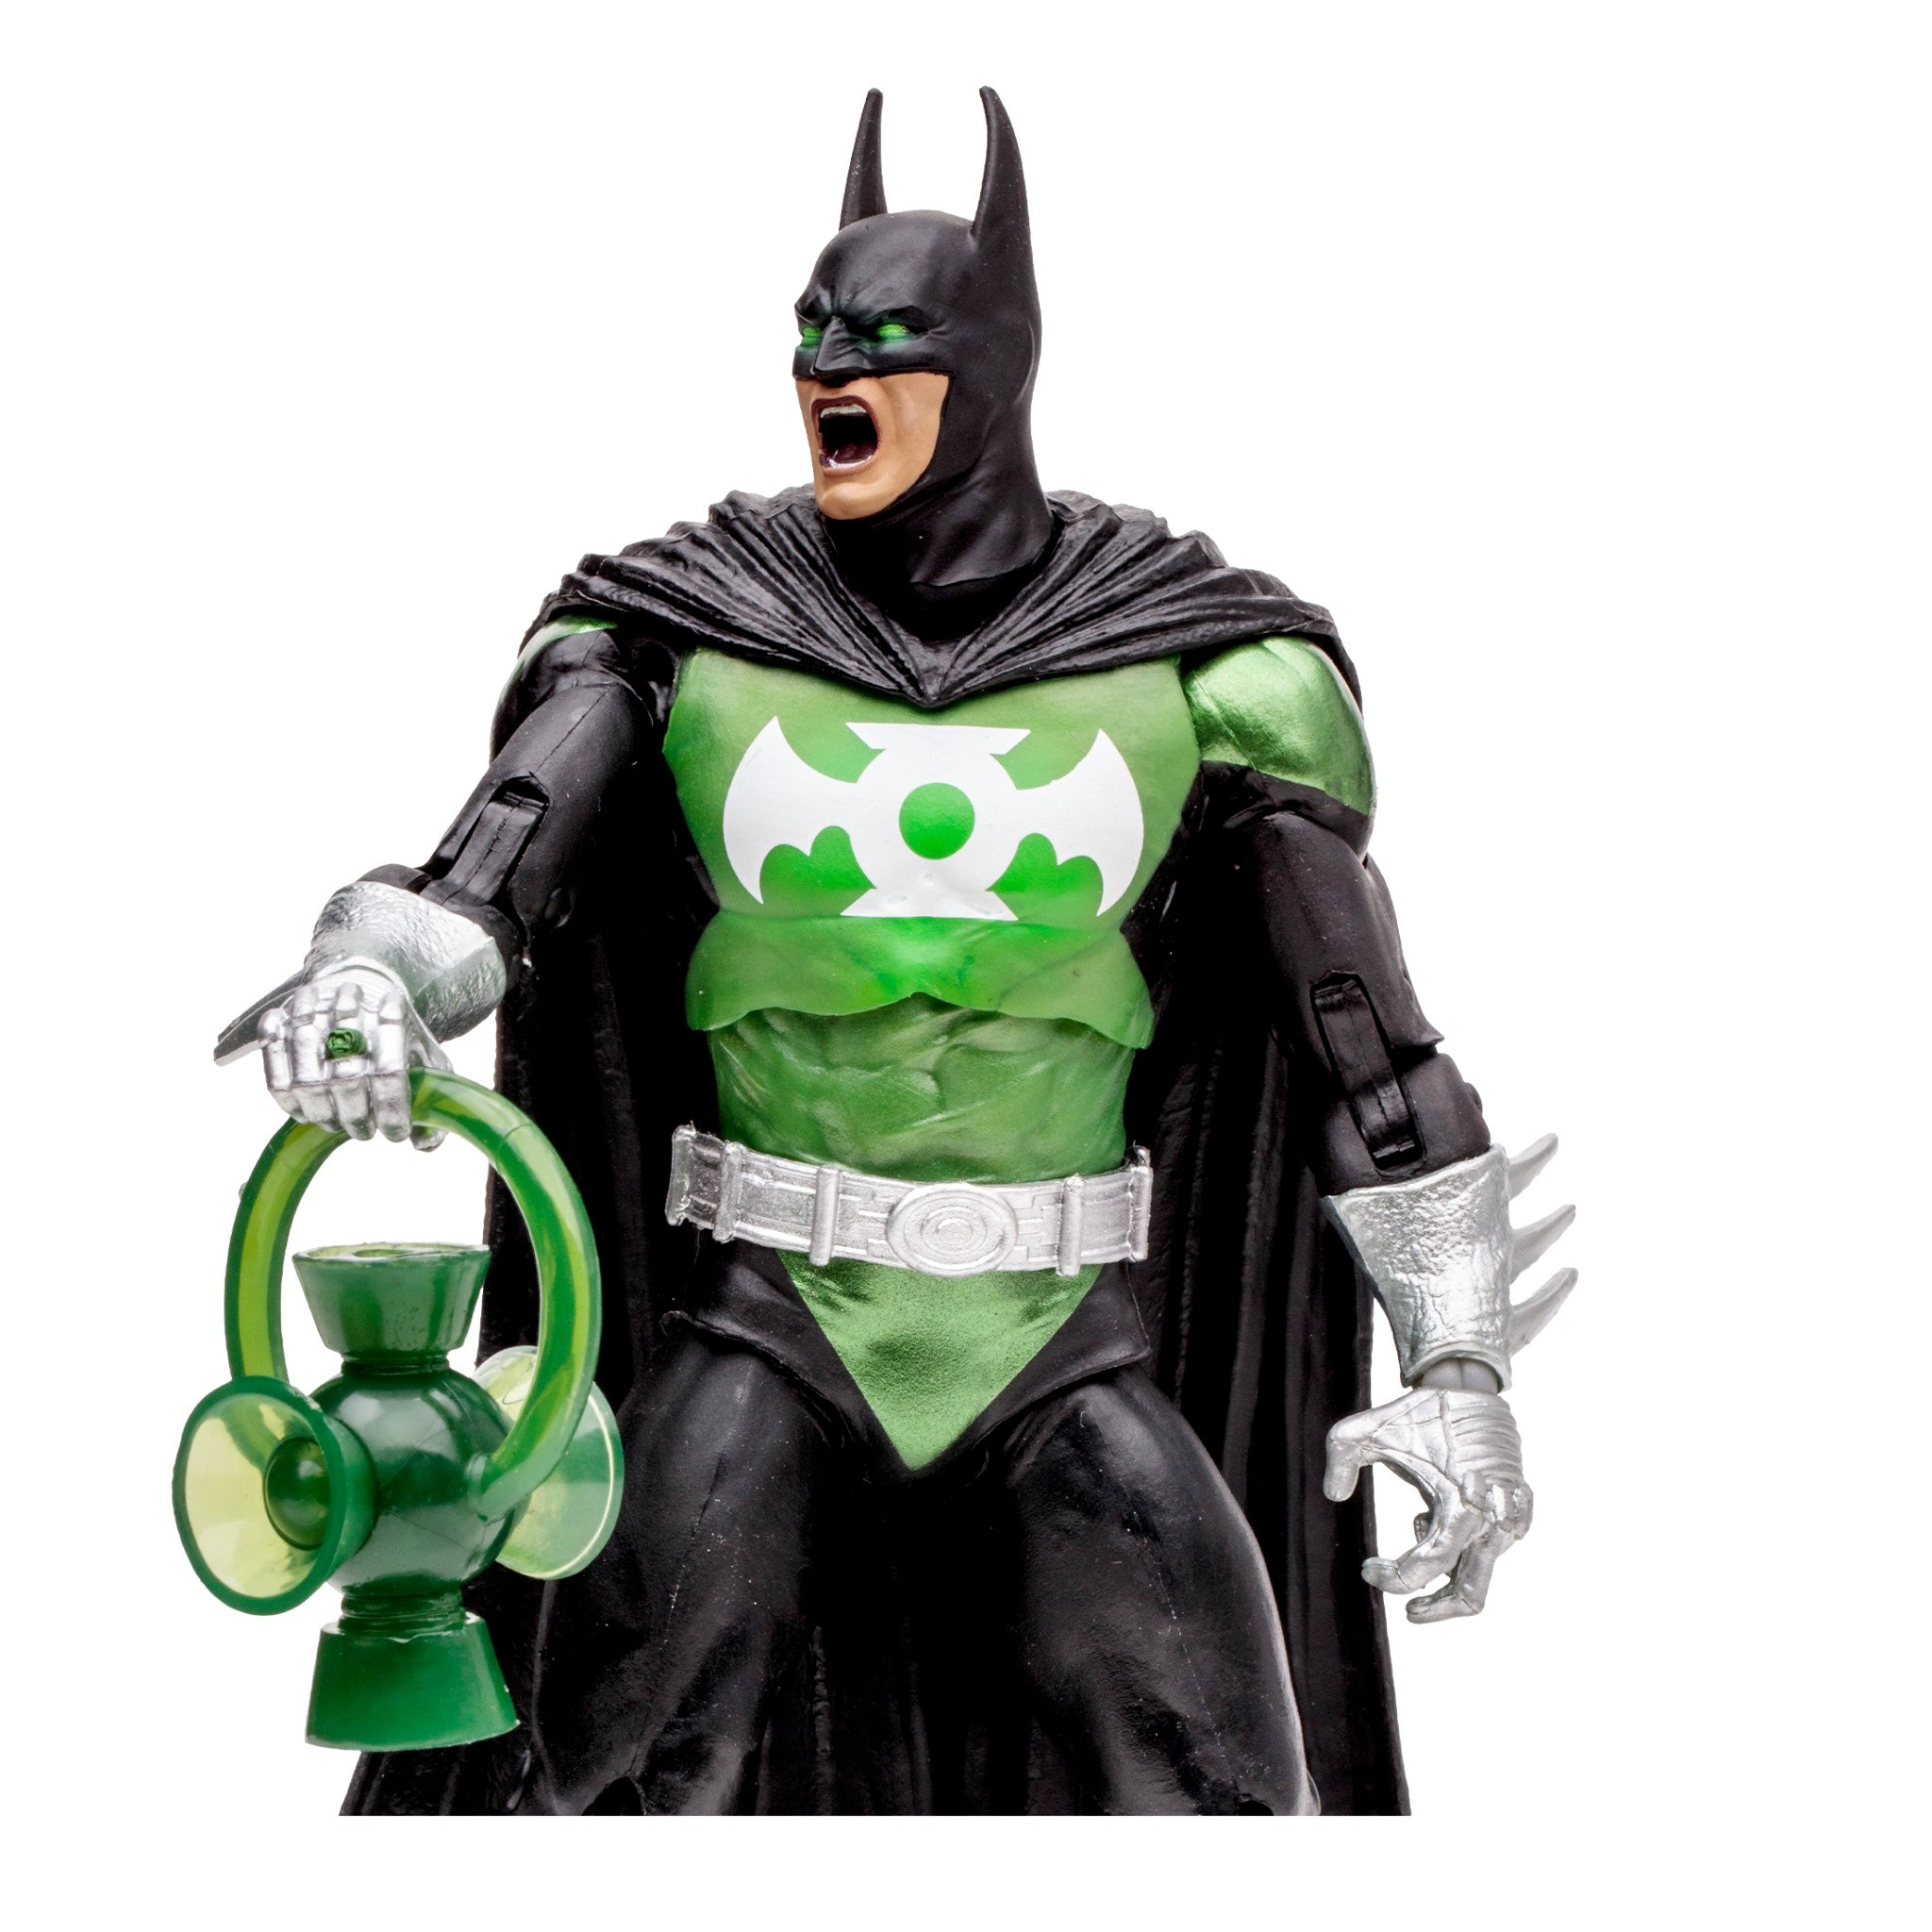 DC Multiverse Collector Edition Batman as Green Lantern - McFarlane Toys-6